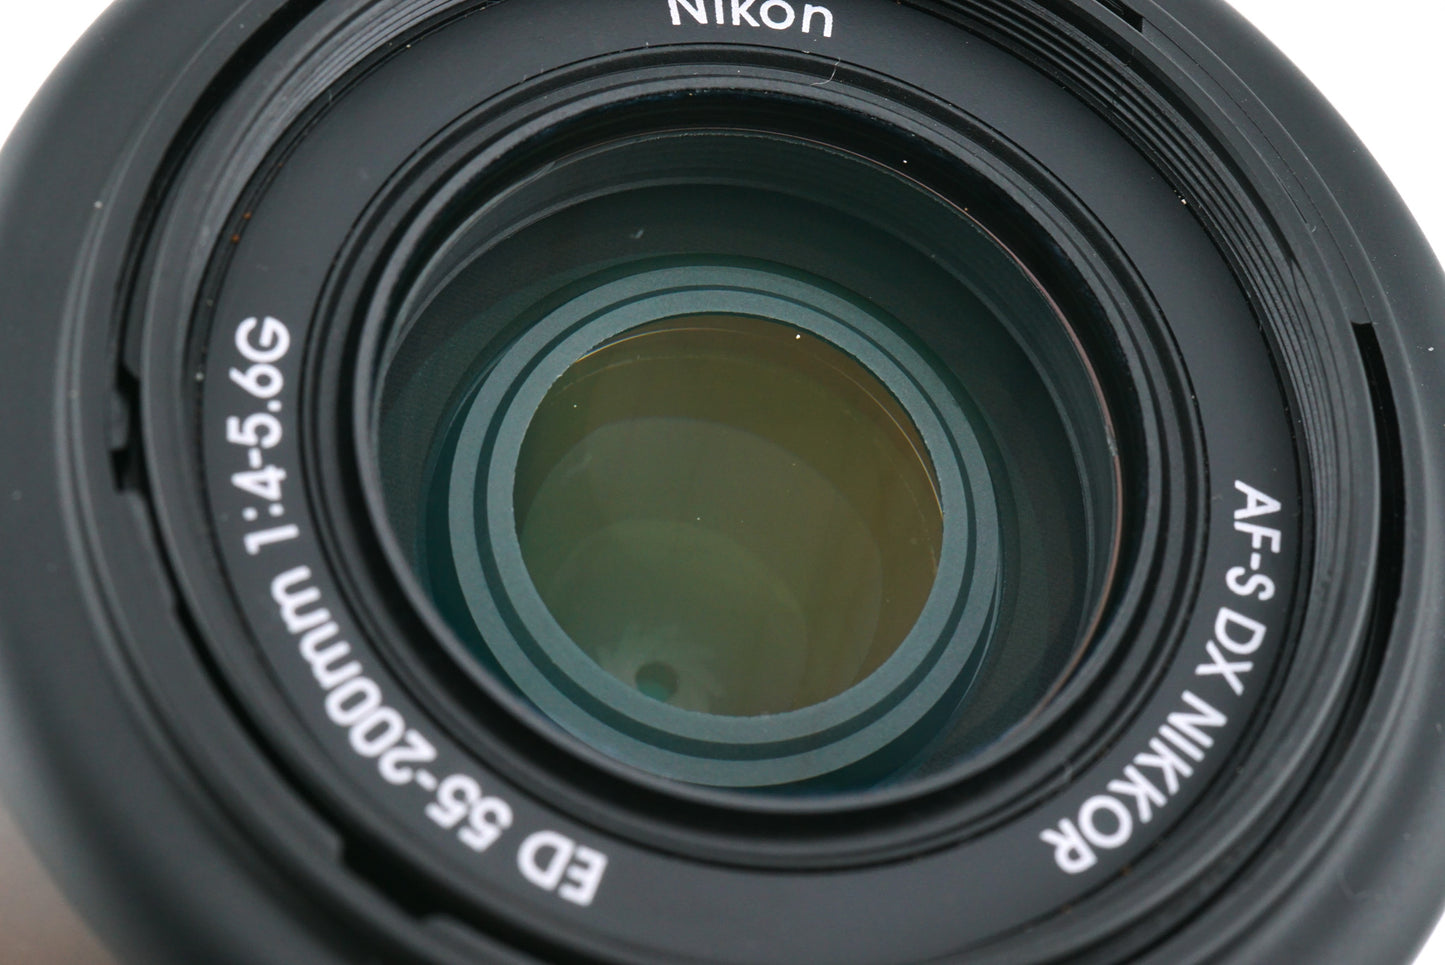 Nikon 55-200mm f4-5.6 G ED AF-S Nikkor